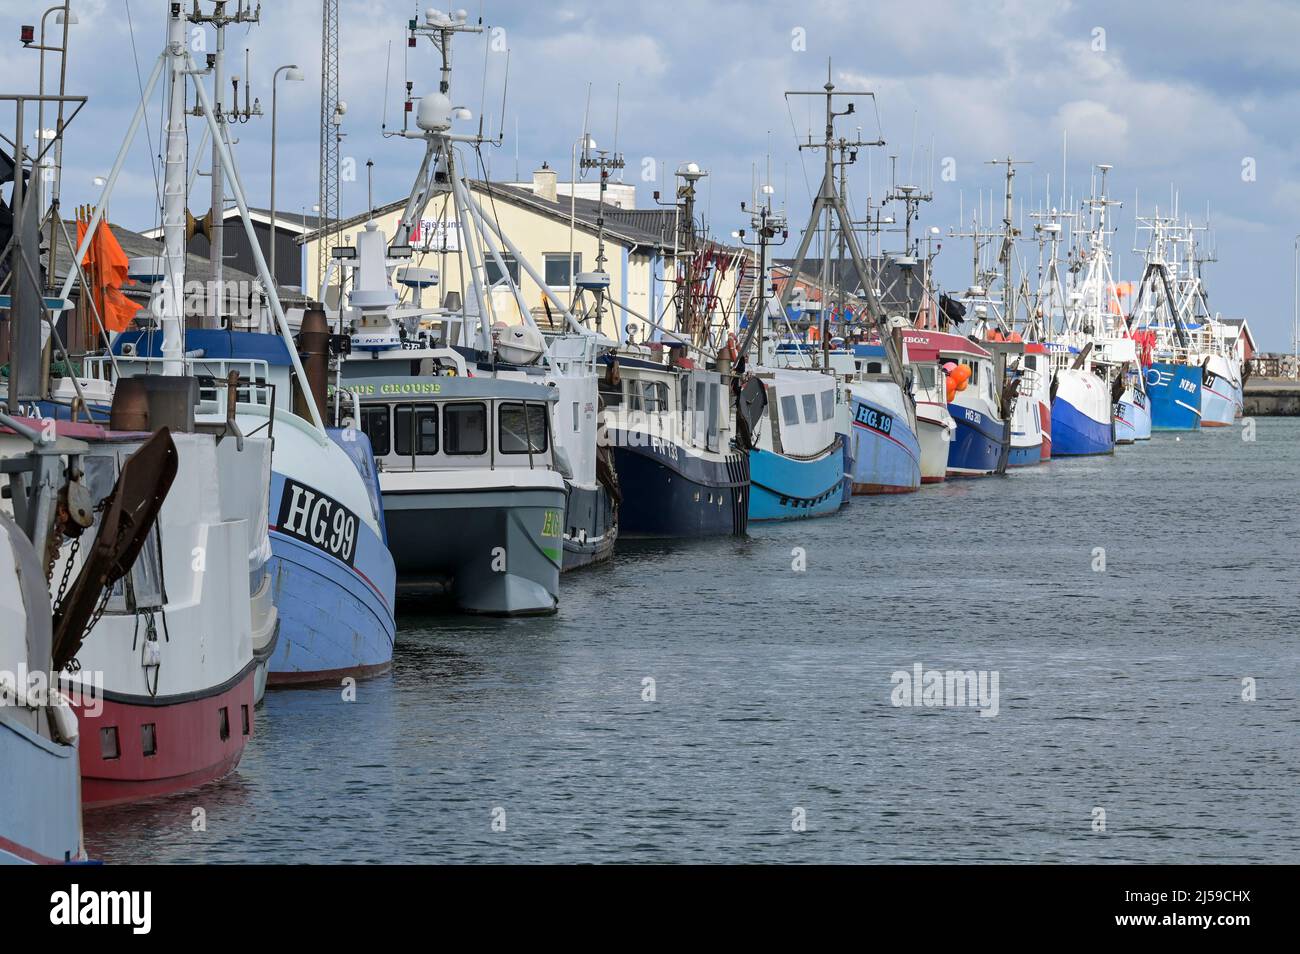 DENMARK, Jutland, Hirtshals, North Sea fishing port with fishing boats / DÄNEMARK, Jütland, Hirtshals, Nordsee Hafen, Fischerboote Stock Photo